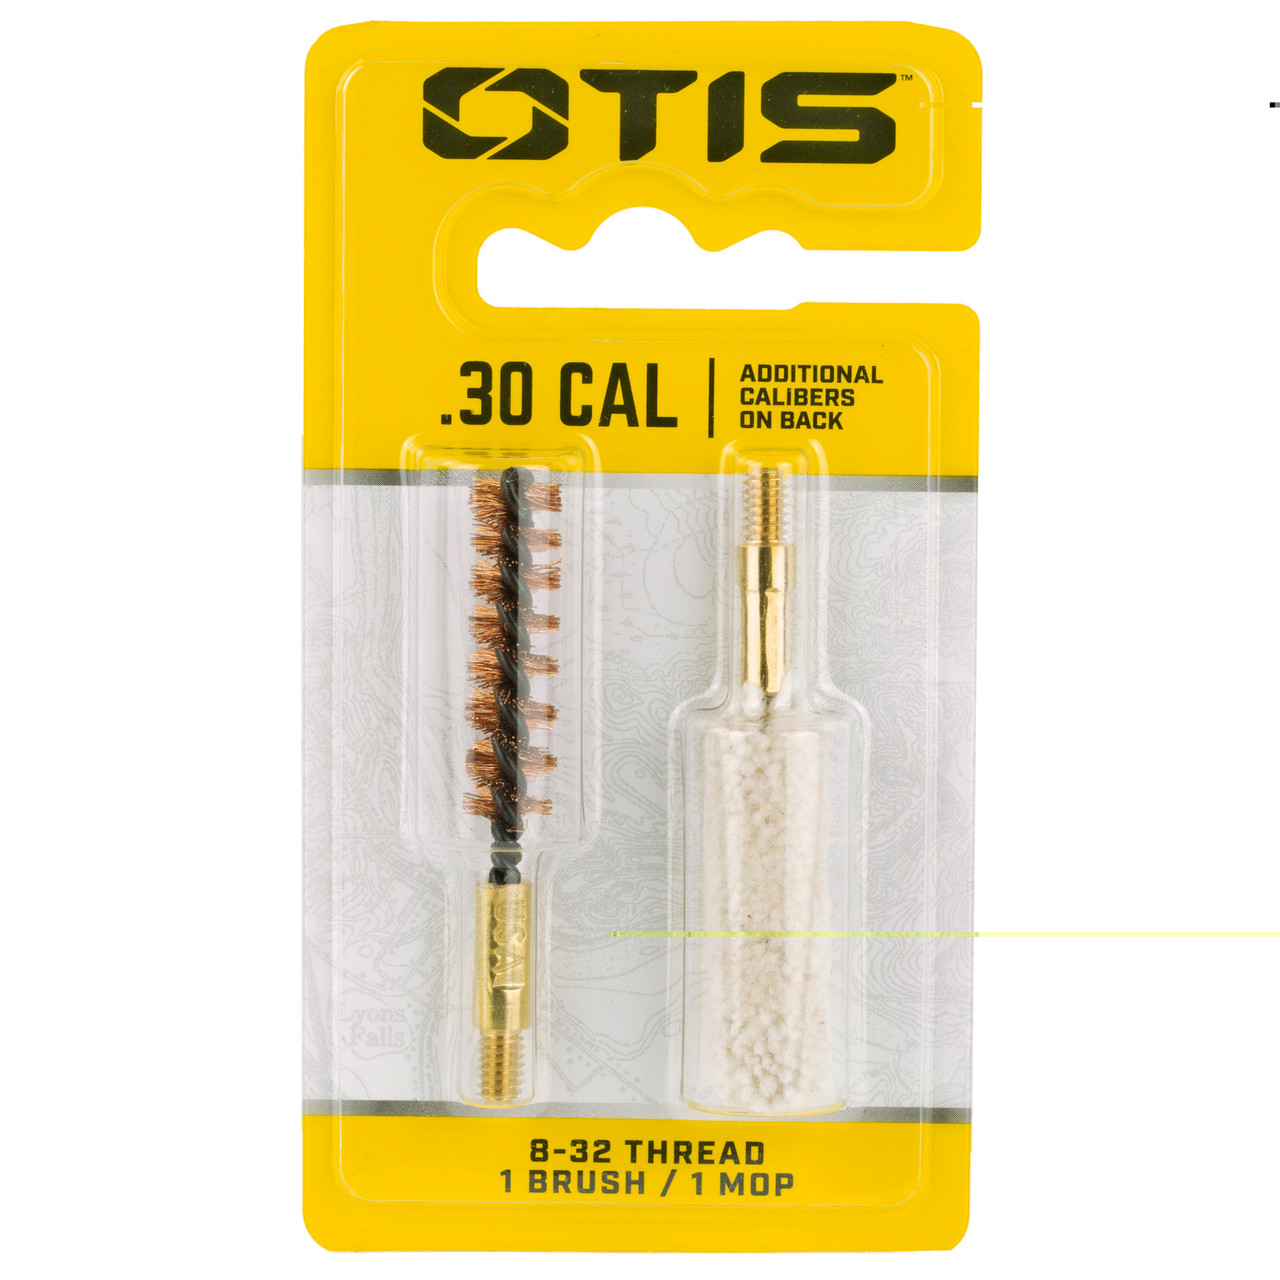 Otis Technologies FG-330-MB 30cal Brush/mop Combo Pack